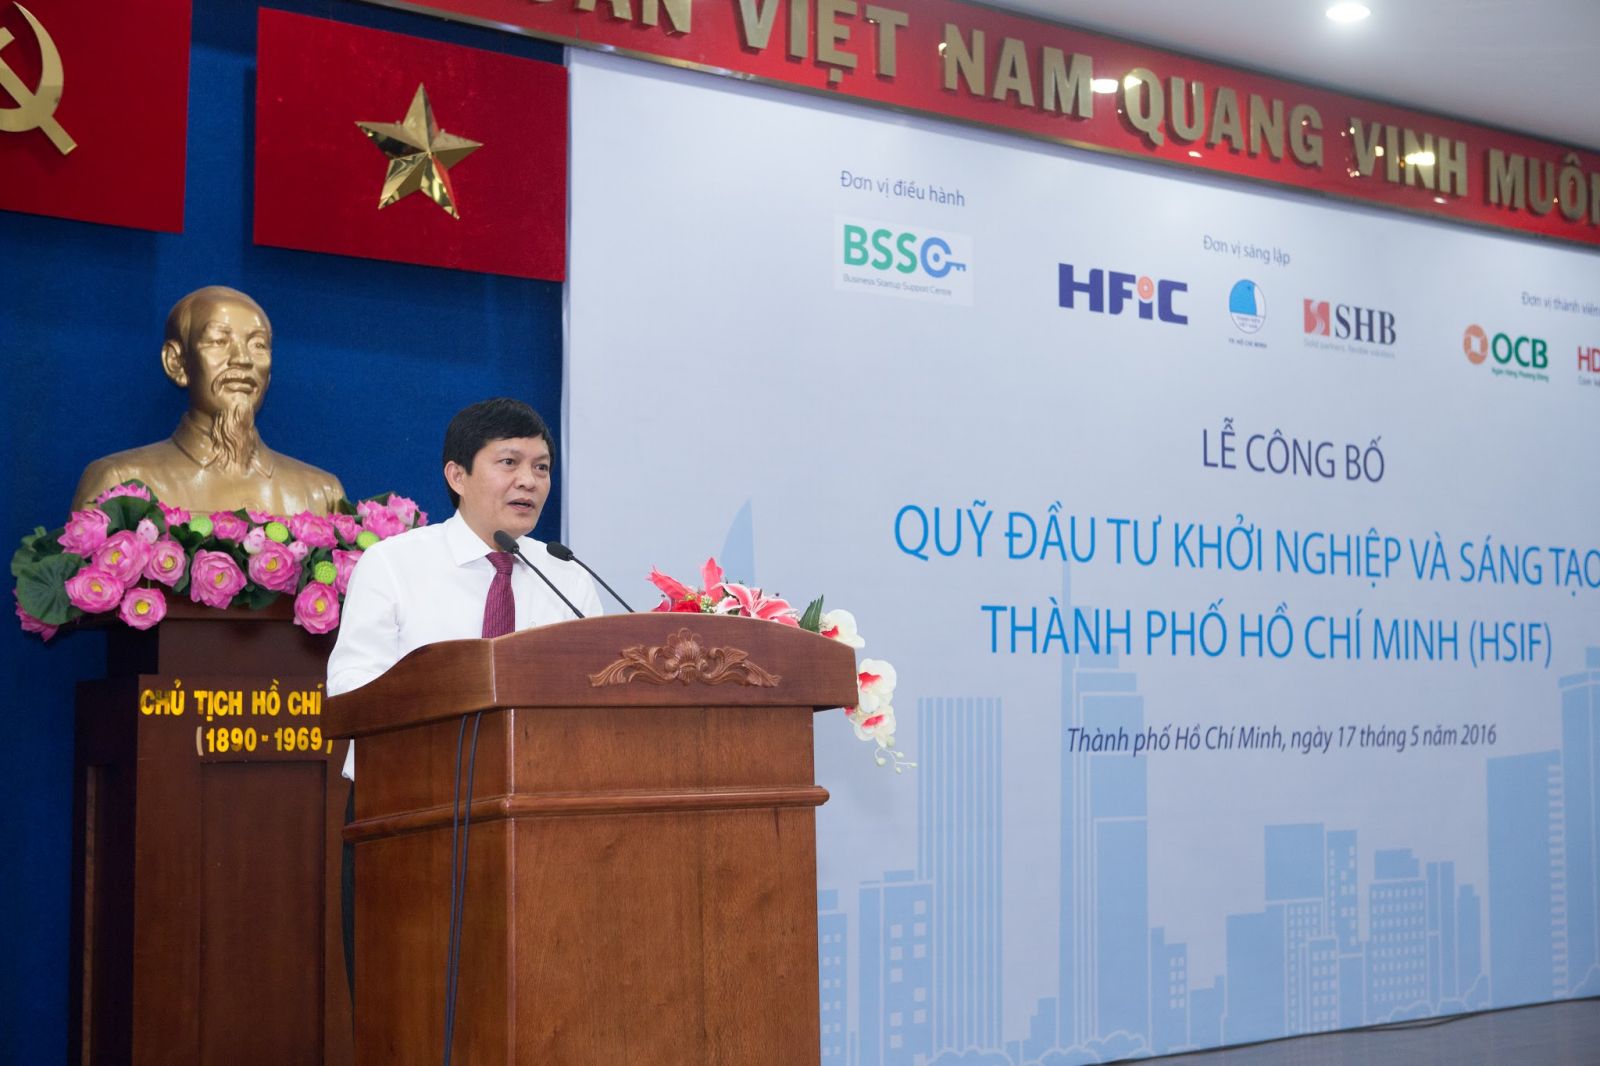 Phạm Phú Quốc (Tổng Giám đốc Công ty Đầu tư Tài chính Nhà nước TPHCM – HFIC) phát biểu tại buổi lễ